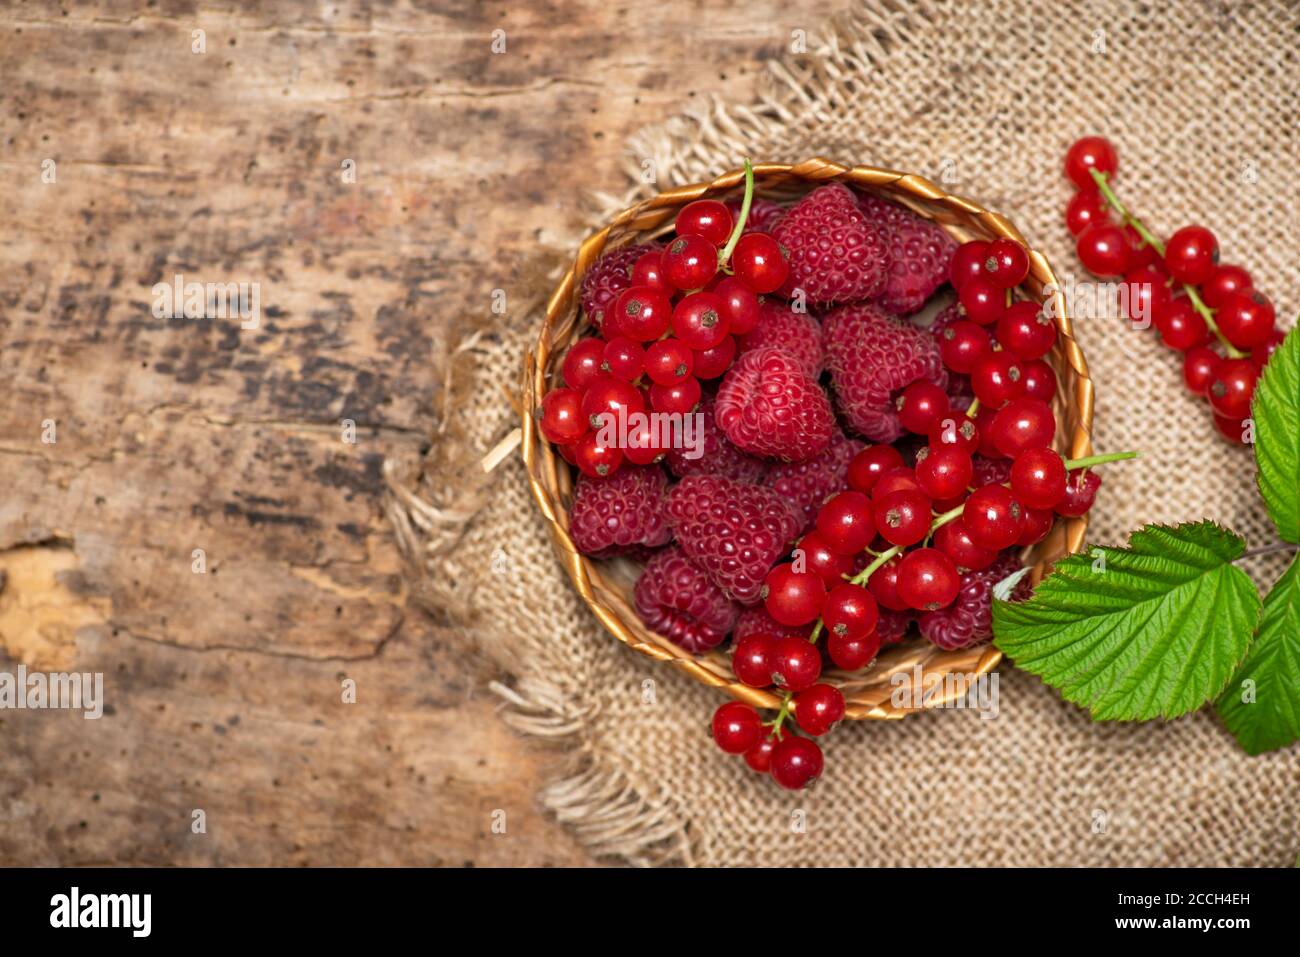 Frische Himbeere und Johannisbeere rote Beerenfrüchte in einer Schüssel Draufsicht Stockfoto